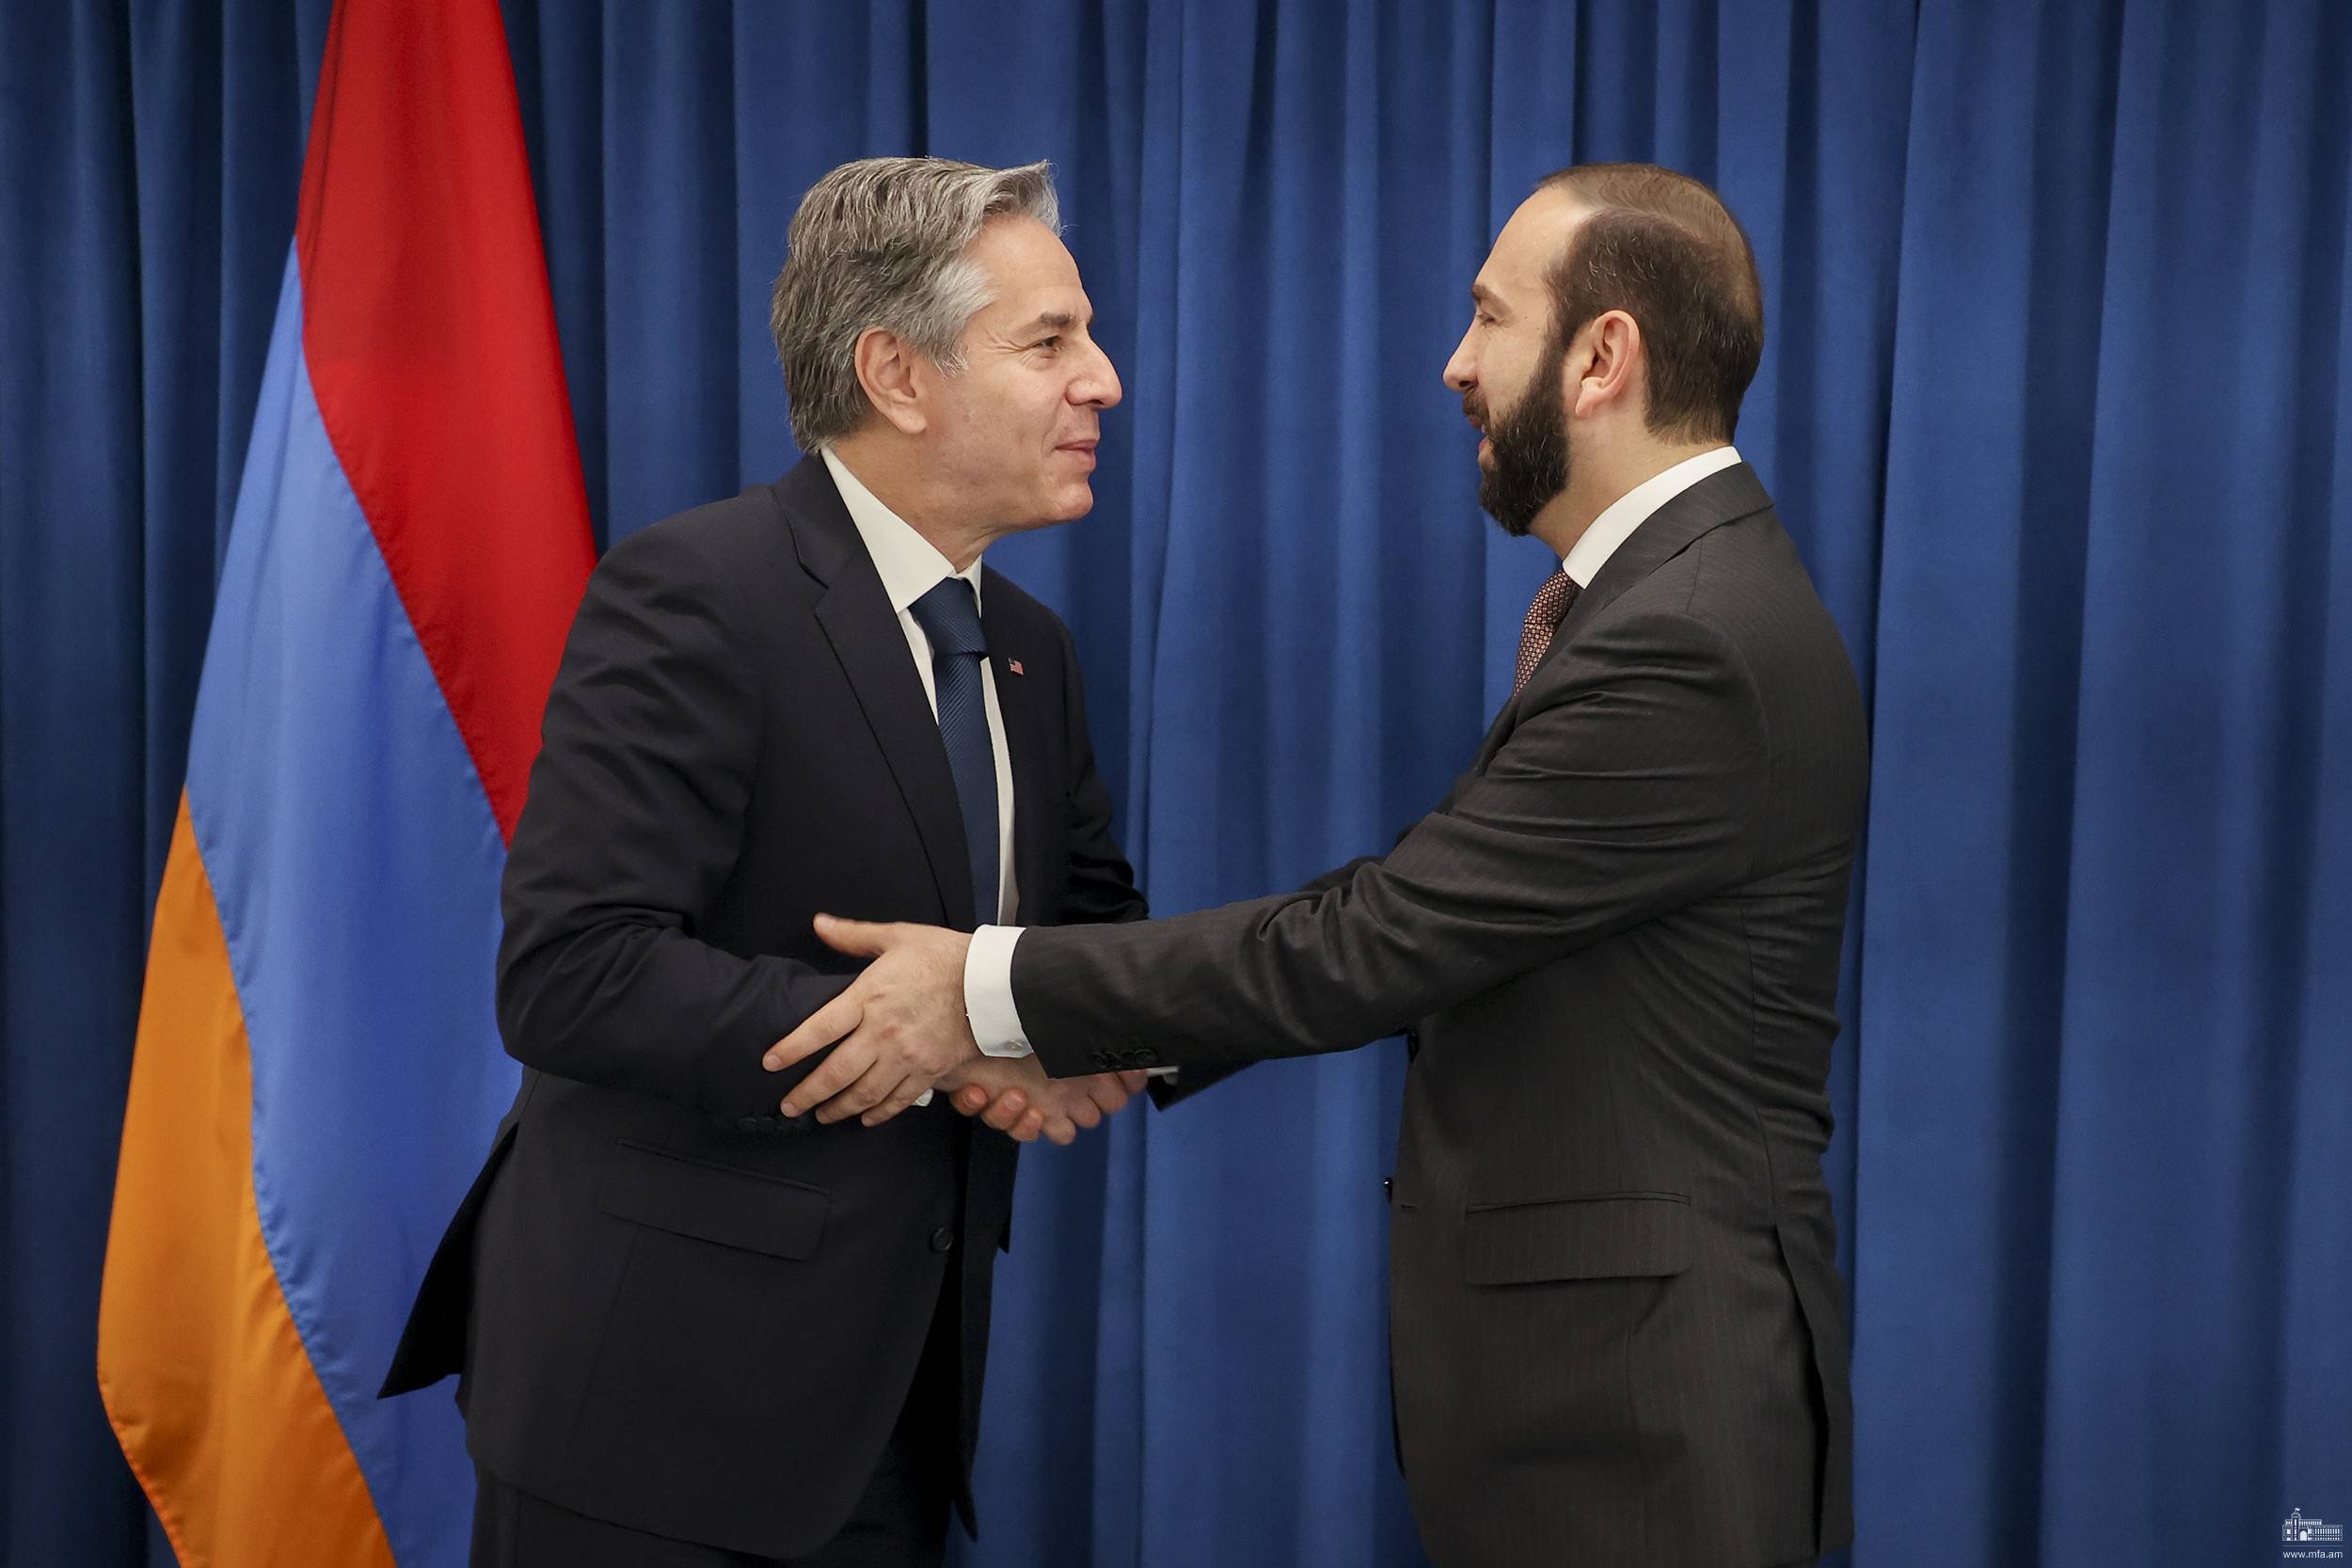 Միրզոյան-Բլինքեն հանդիպմանը կարևորվել է Հայաստանի և Ադրբեջանի միջև սահմանազատման գործընթացի ապահովումը՝ հիմնված Ալմա-Աթայի հռչակագրի և 1975թ. քարտեզի վրա, սահմանից զորքերի հետքաշումը և ԼՂ ժողովրդի իրավունքների և անվտանգության հարցերի հասցեագրումը